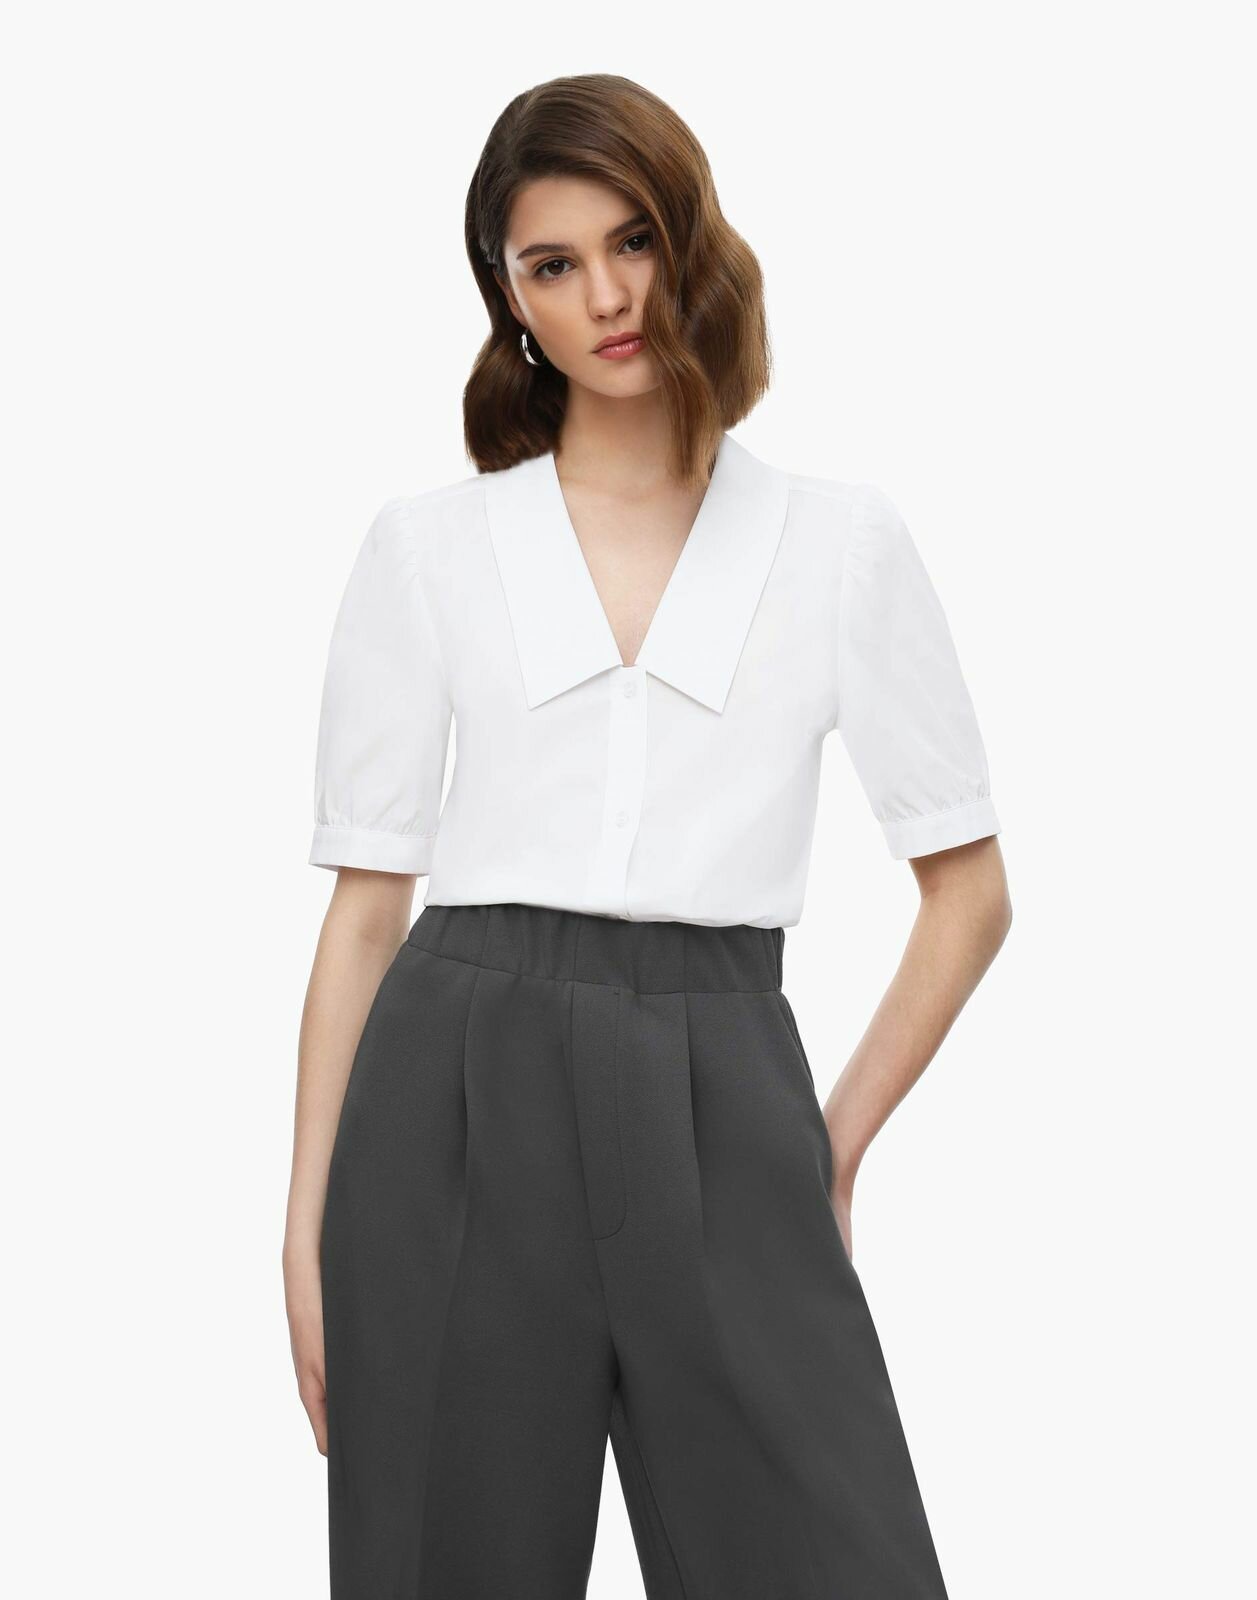 Рубашка с коротким рукавом Gloria Jeans GSU001168 белый женский L (48-50)